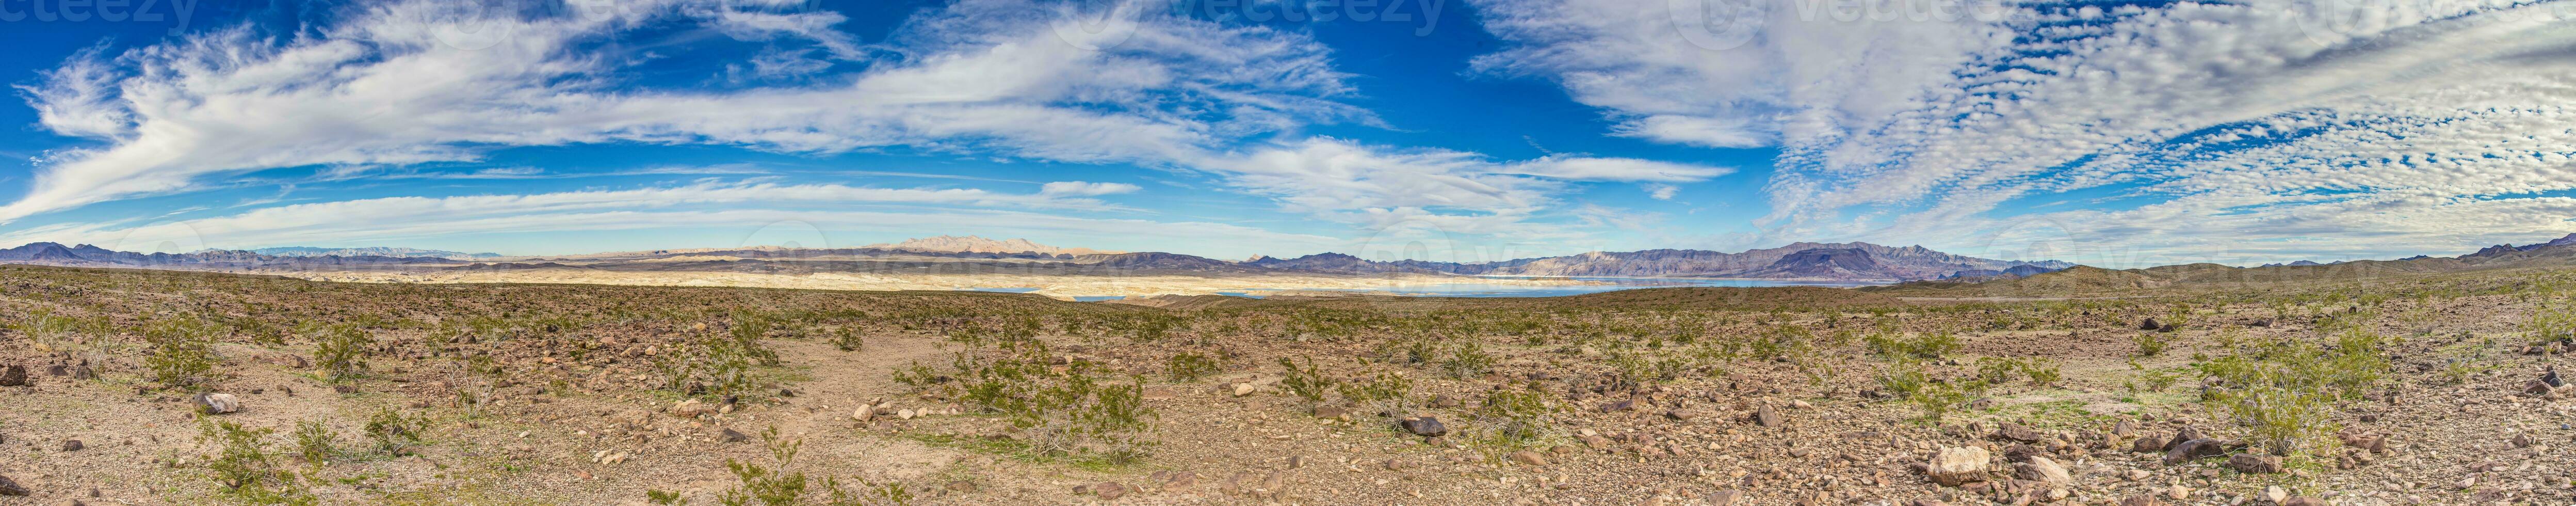 panoramico Visualizza di lago powell con circostante deserto foto